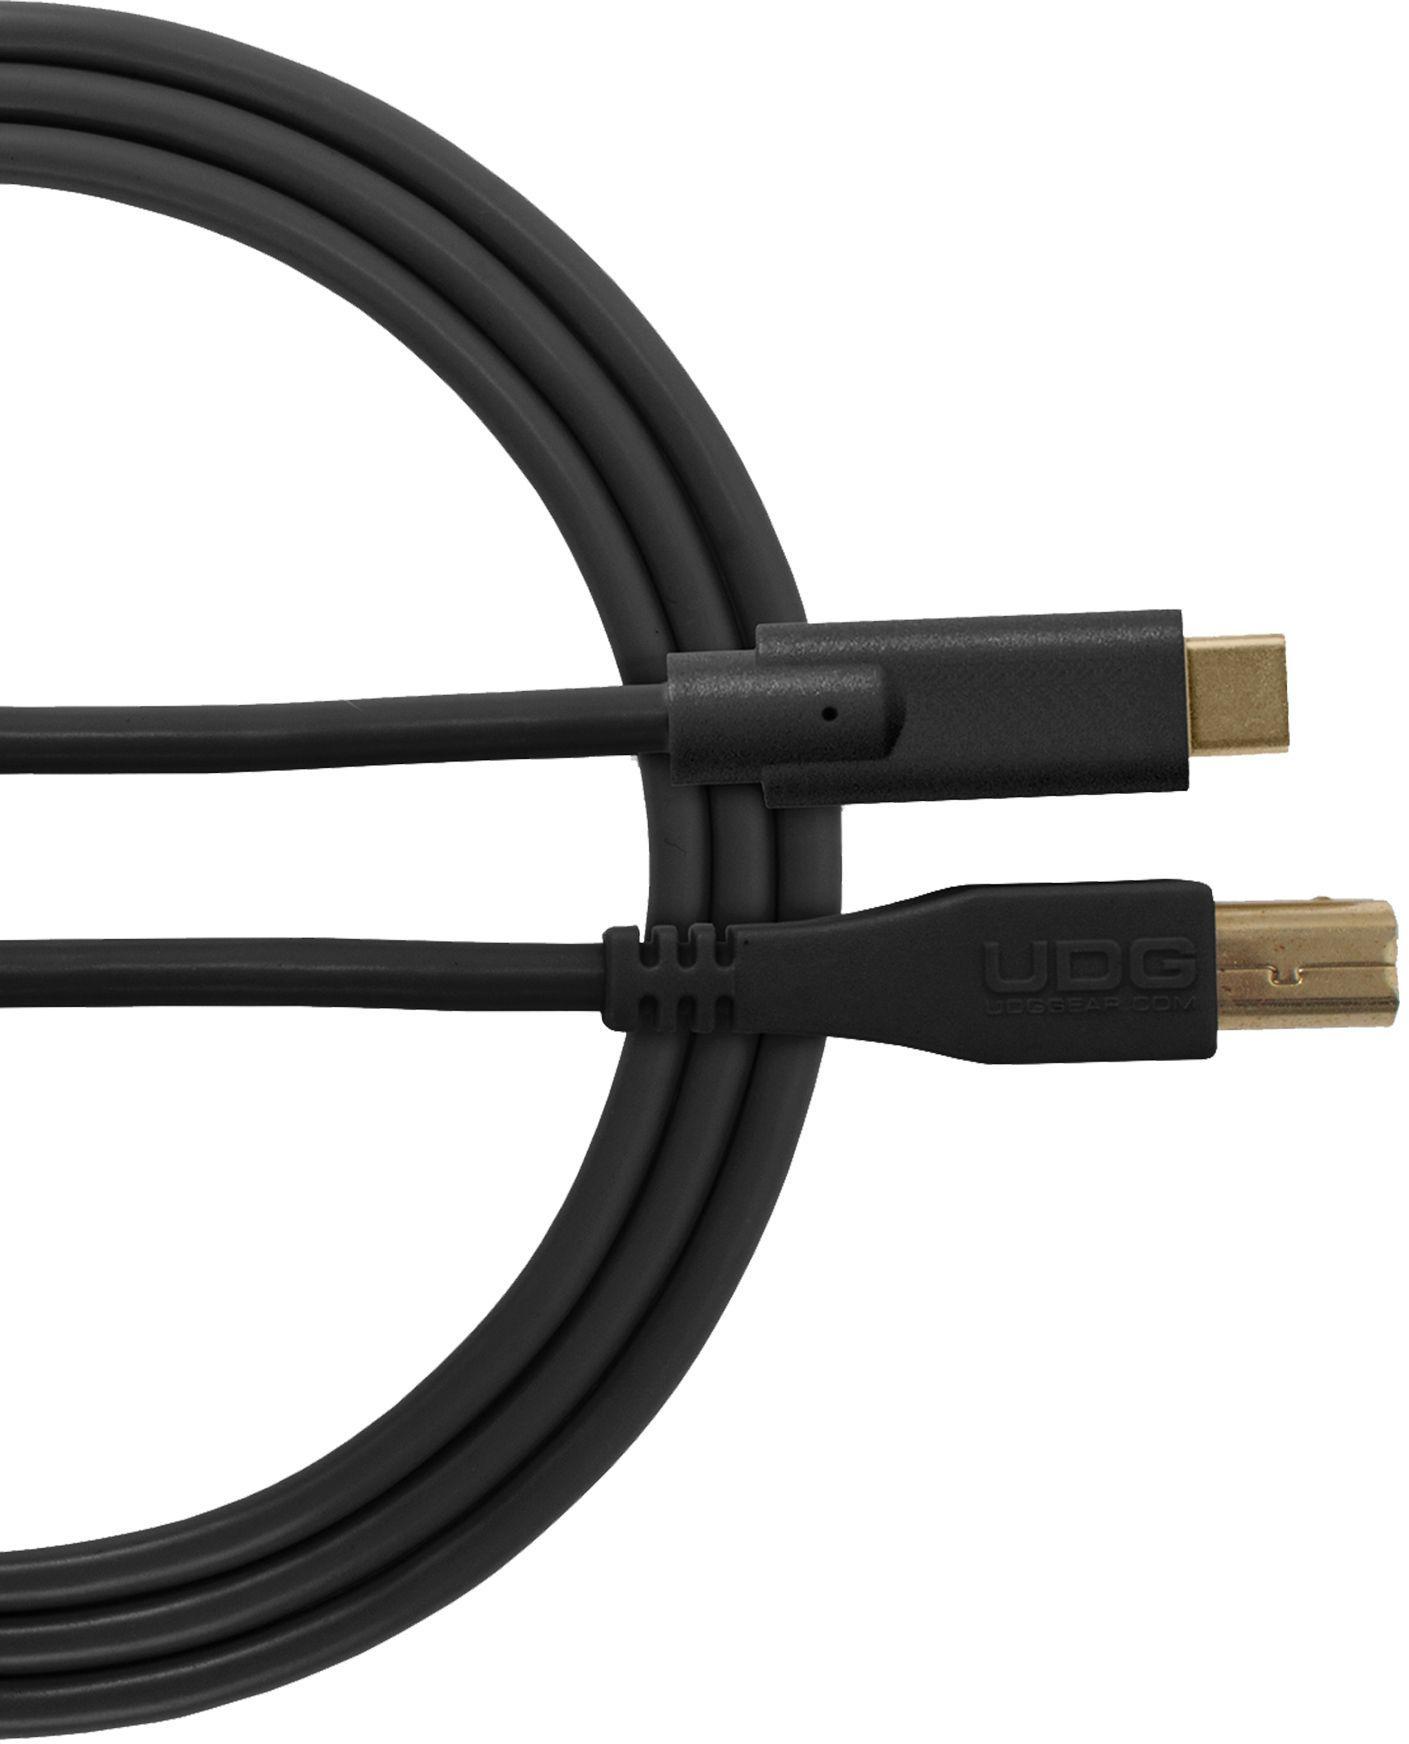 Cable Udg U 96001 BL (Cable USB 2.0 C-B noir droit 1.5M